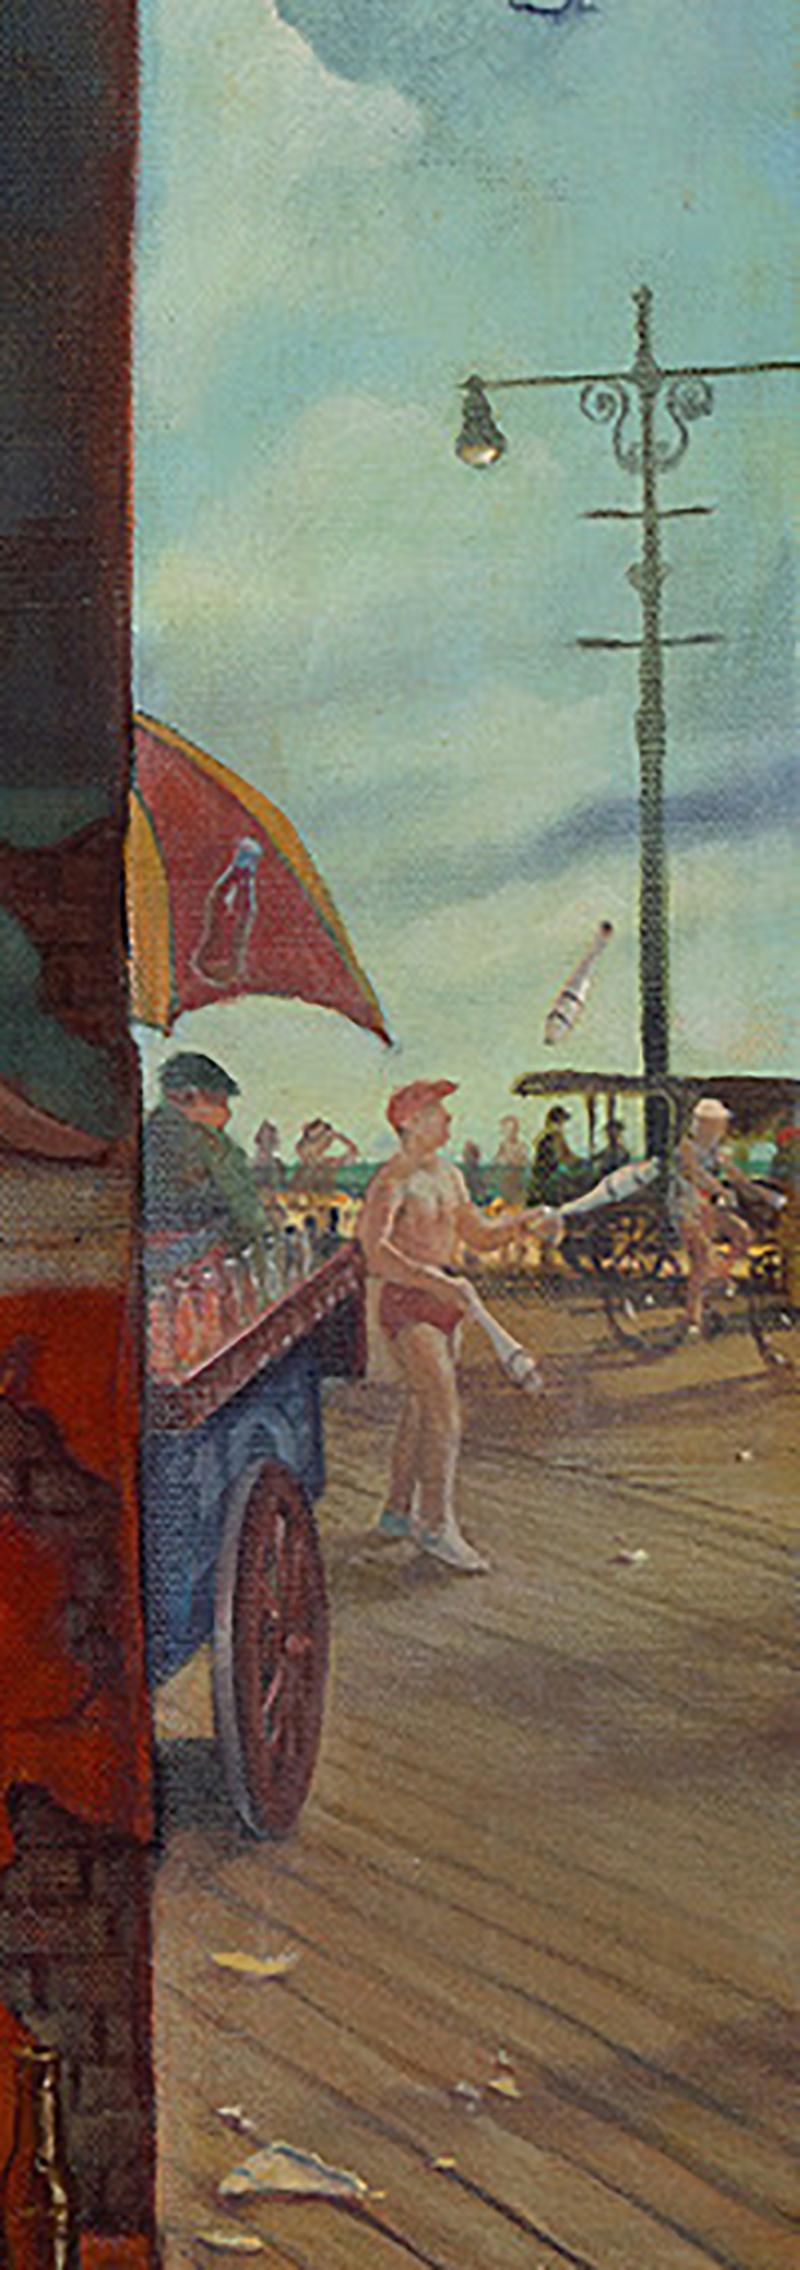 Boardwalk Beauty, Danny Galieote, Oil on Canvas, Pop Art, Americana-Figurative For Sale 3